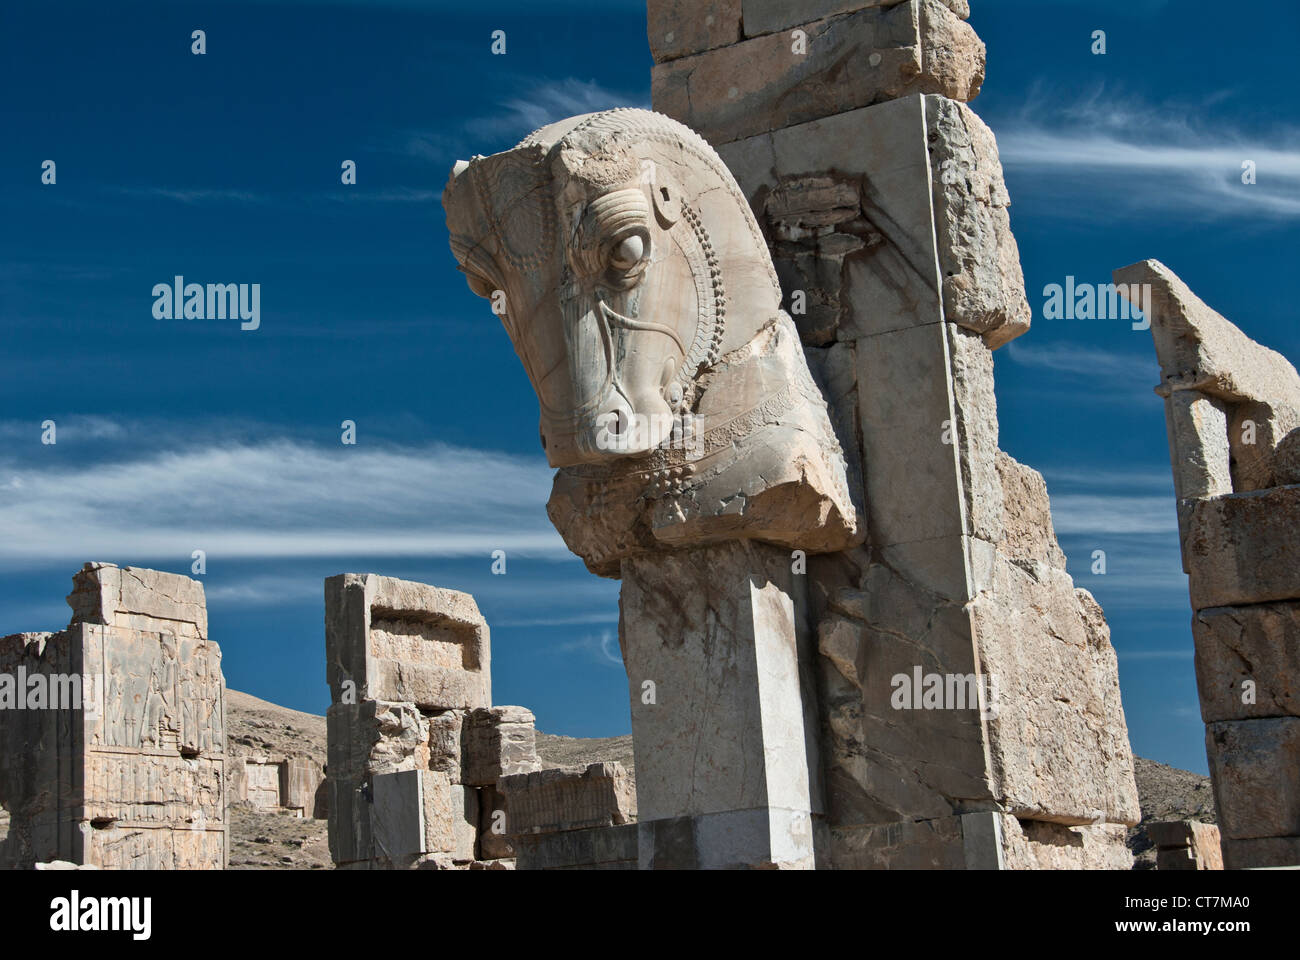 Persian Horse, Persepolis, Shiraz, Iran Stock Photo